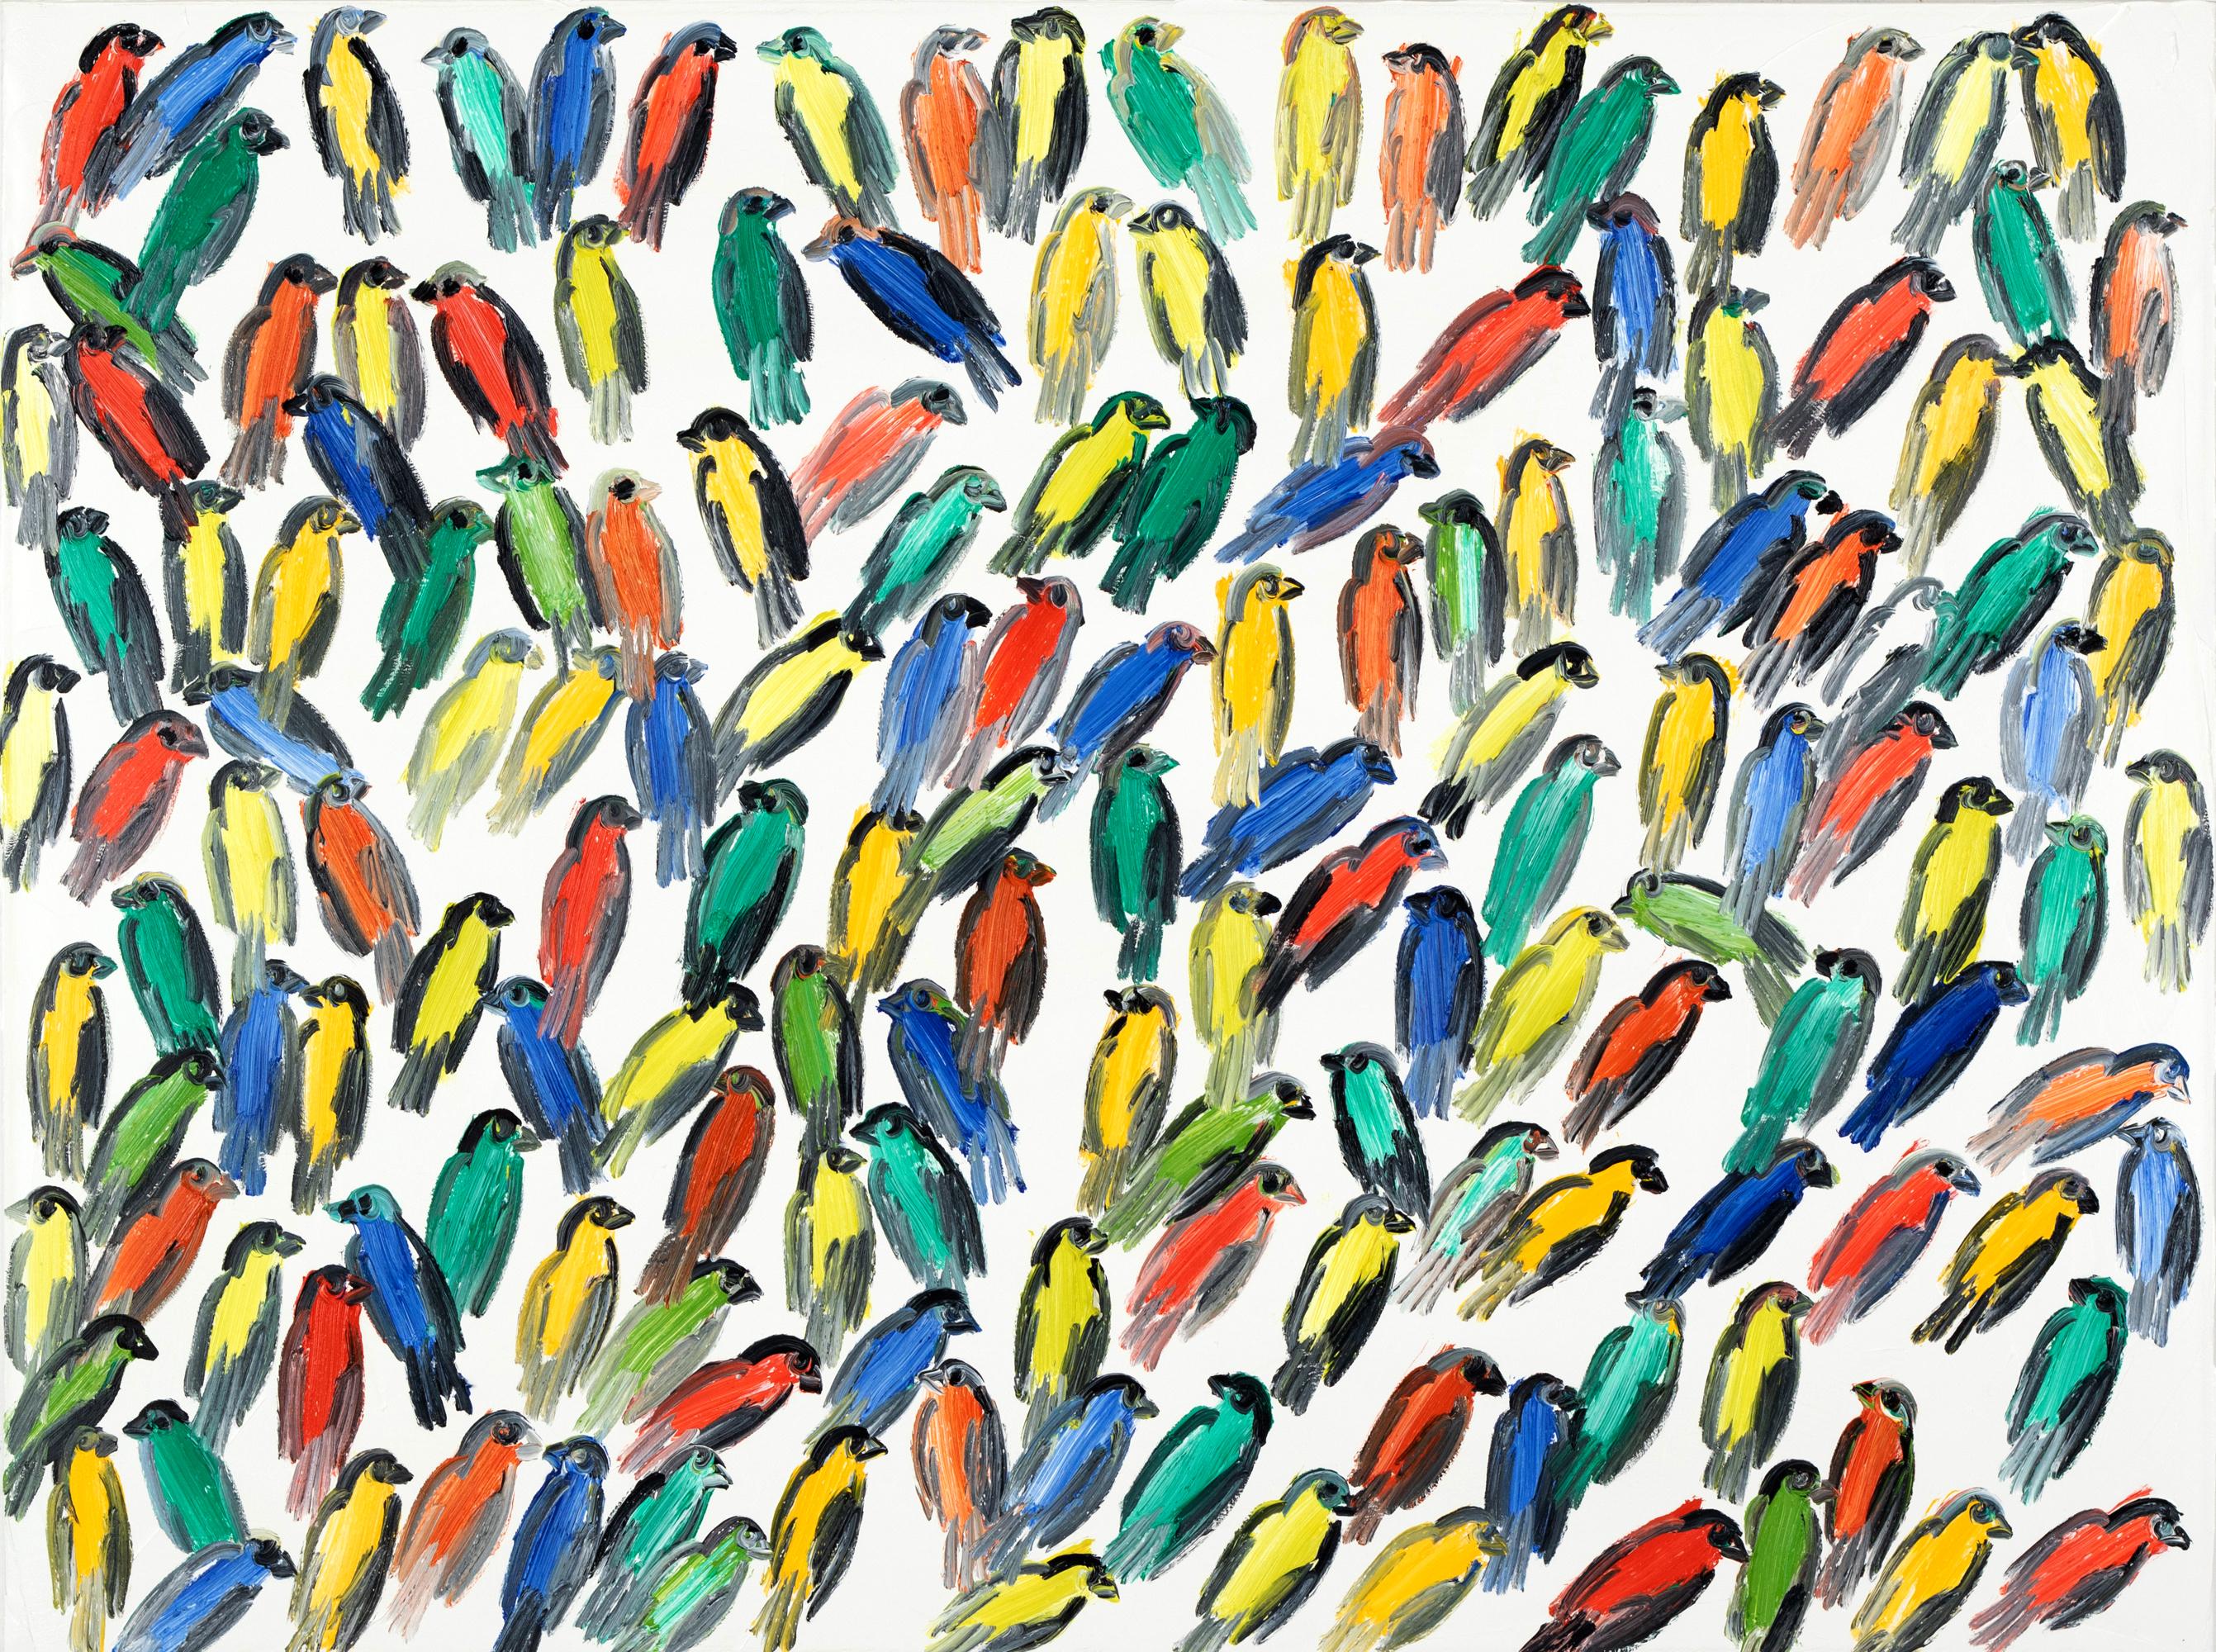 Abstract Painting Hunt Slonem - Peinture à l'huile sur toile « Fives », oiseaux multicolores avec fond blanc